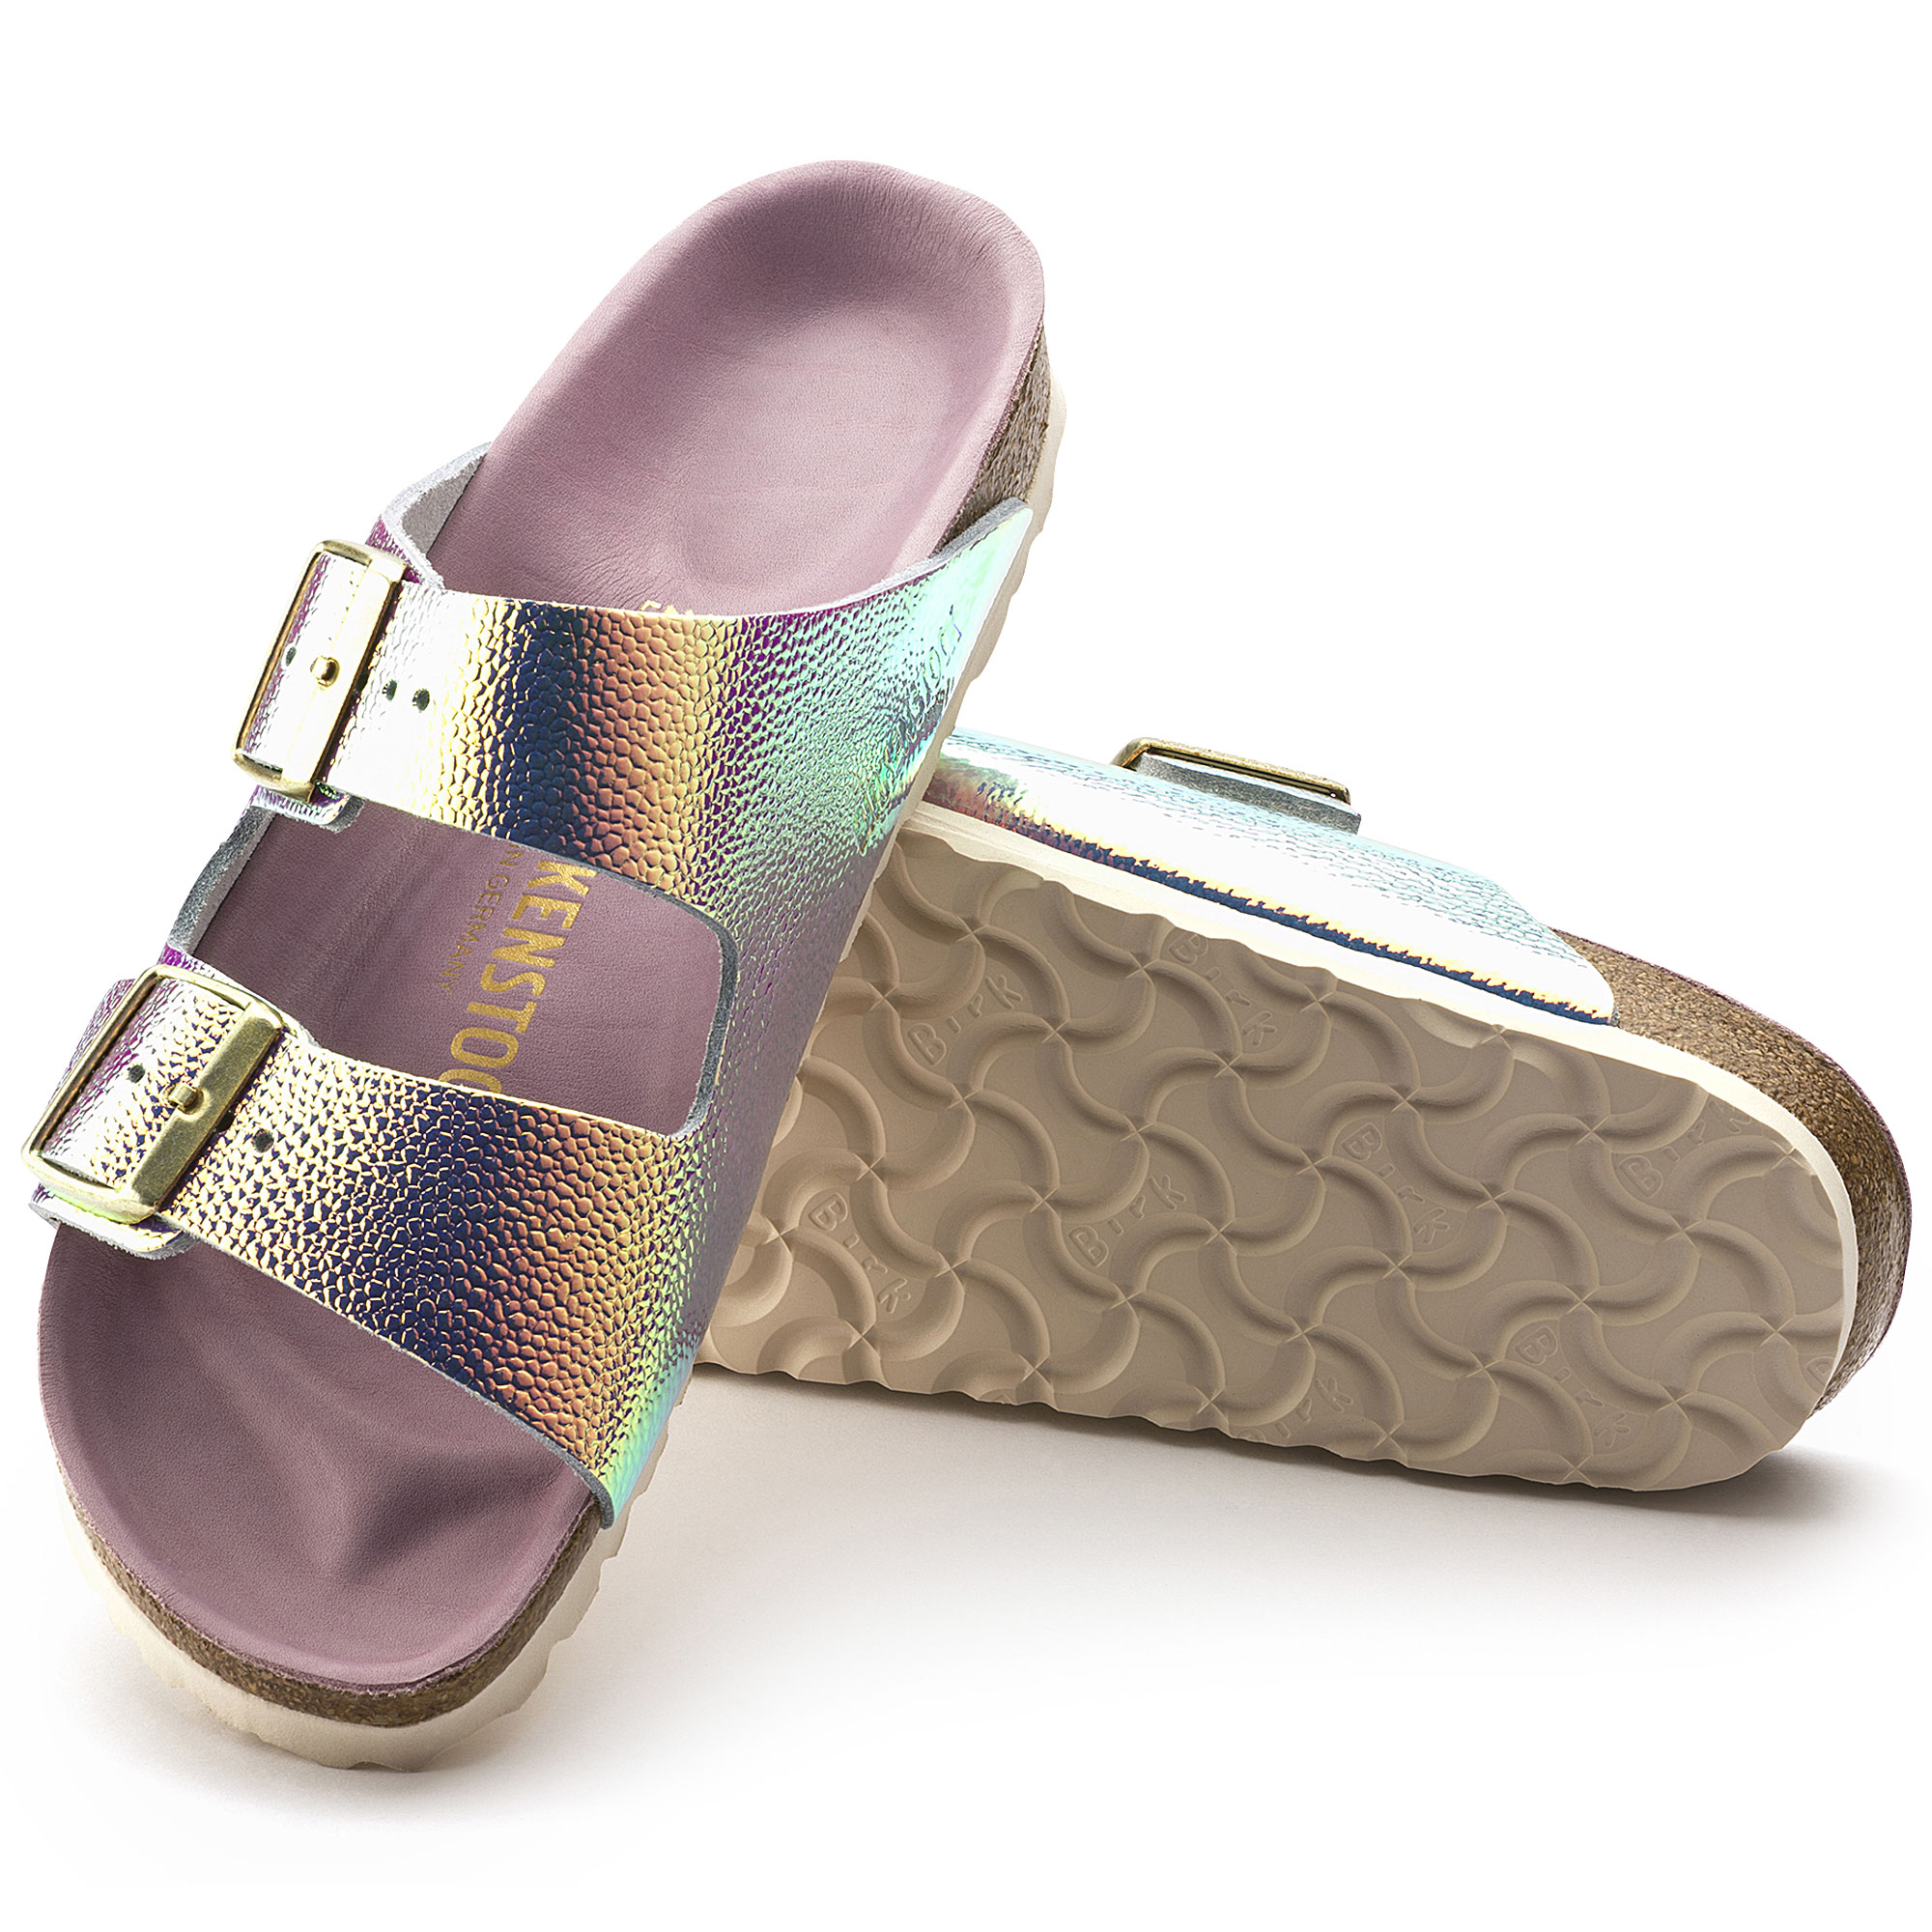 iridescent birkenstock sandals